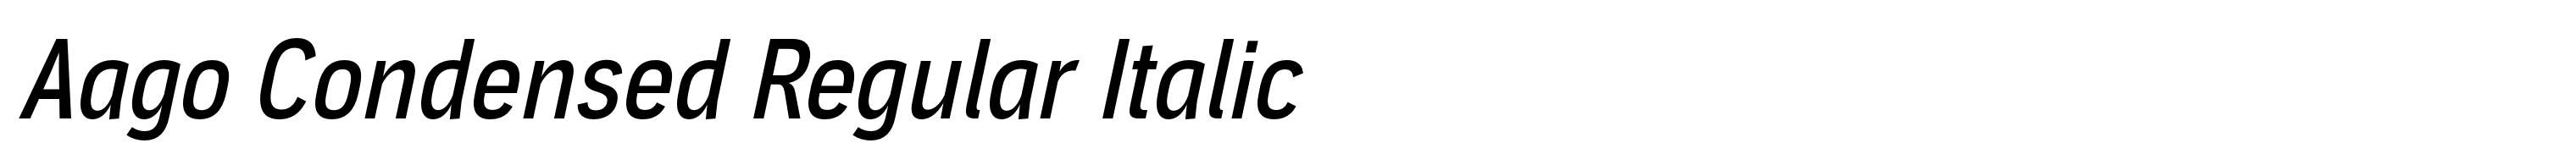 Aago Condensed Regular Italic